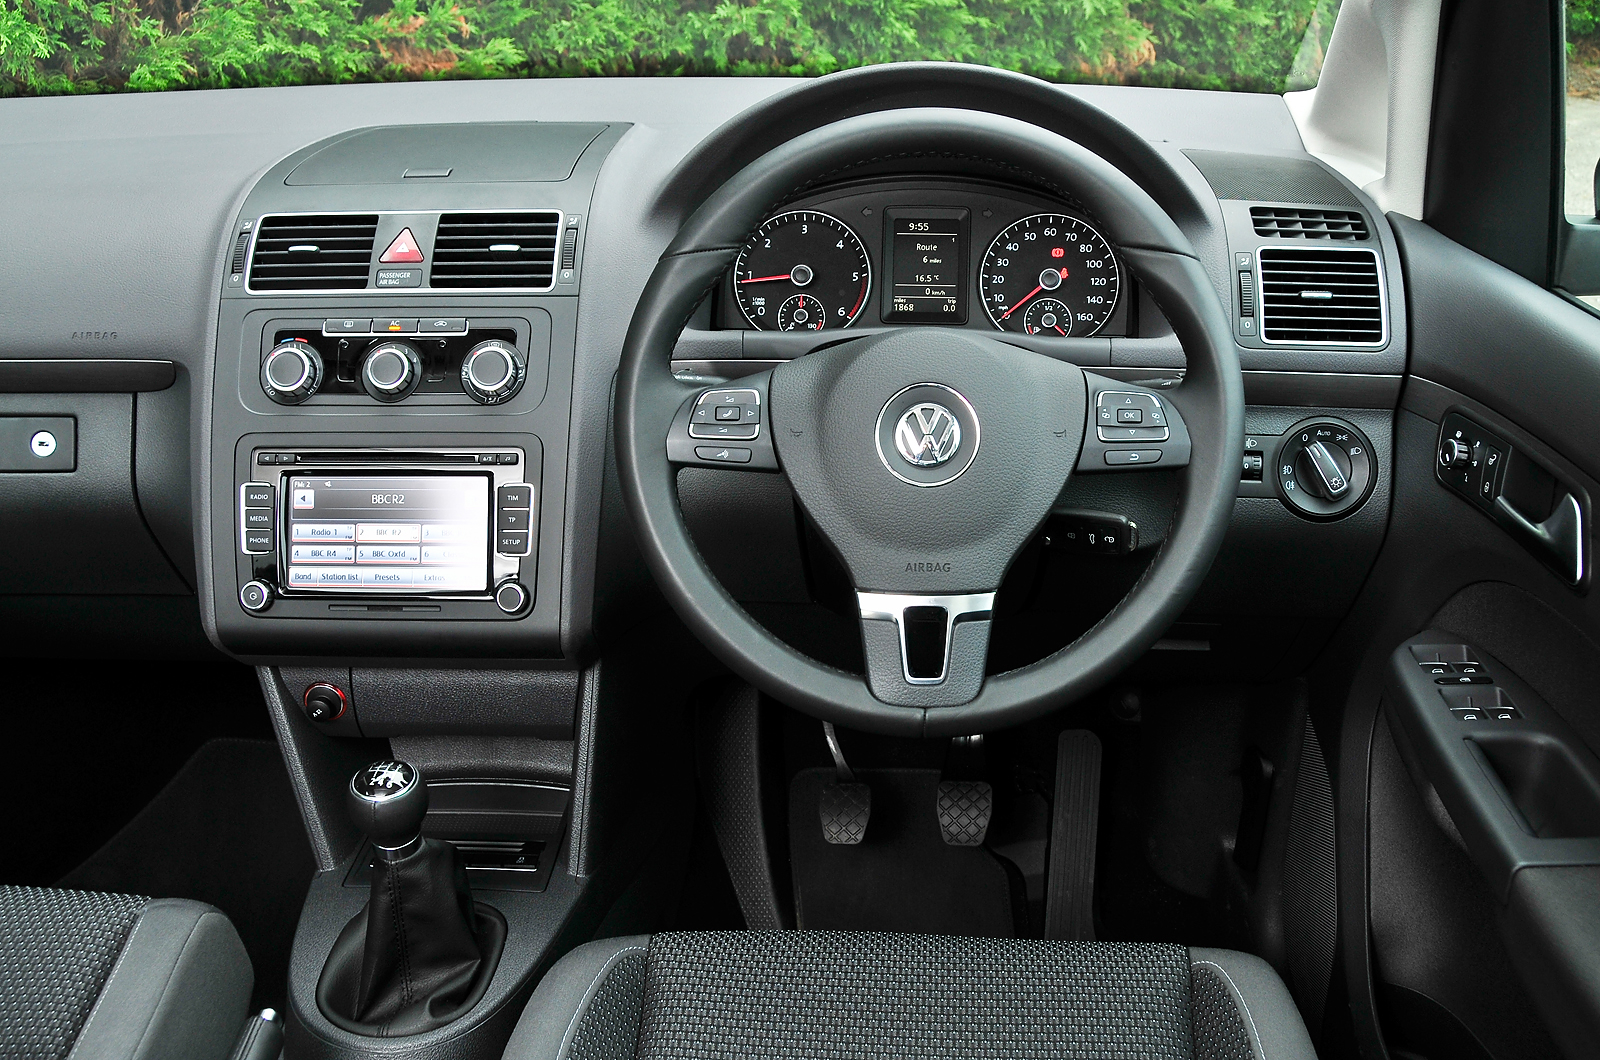 Volkswagen Touran dashboard